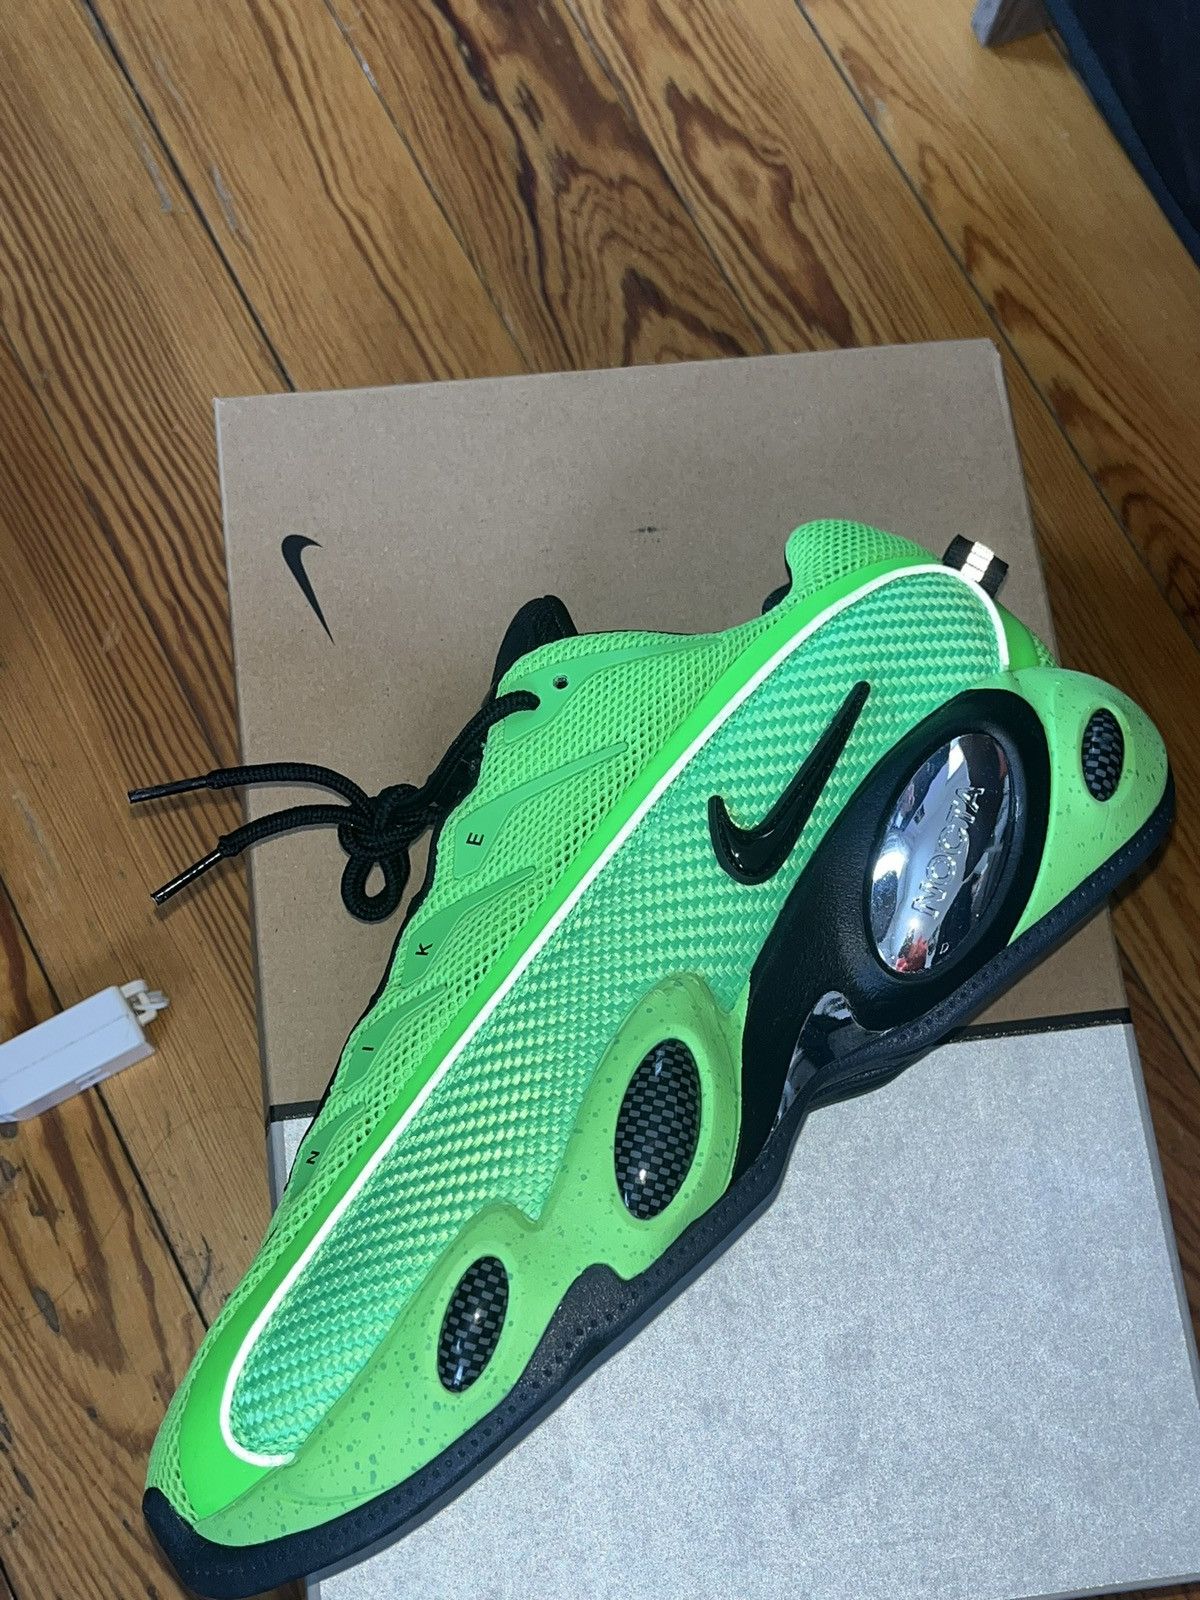 Pre-owned Drake X Nike F&f Nocta Eybl Green Glide - Slime Green Shoes